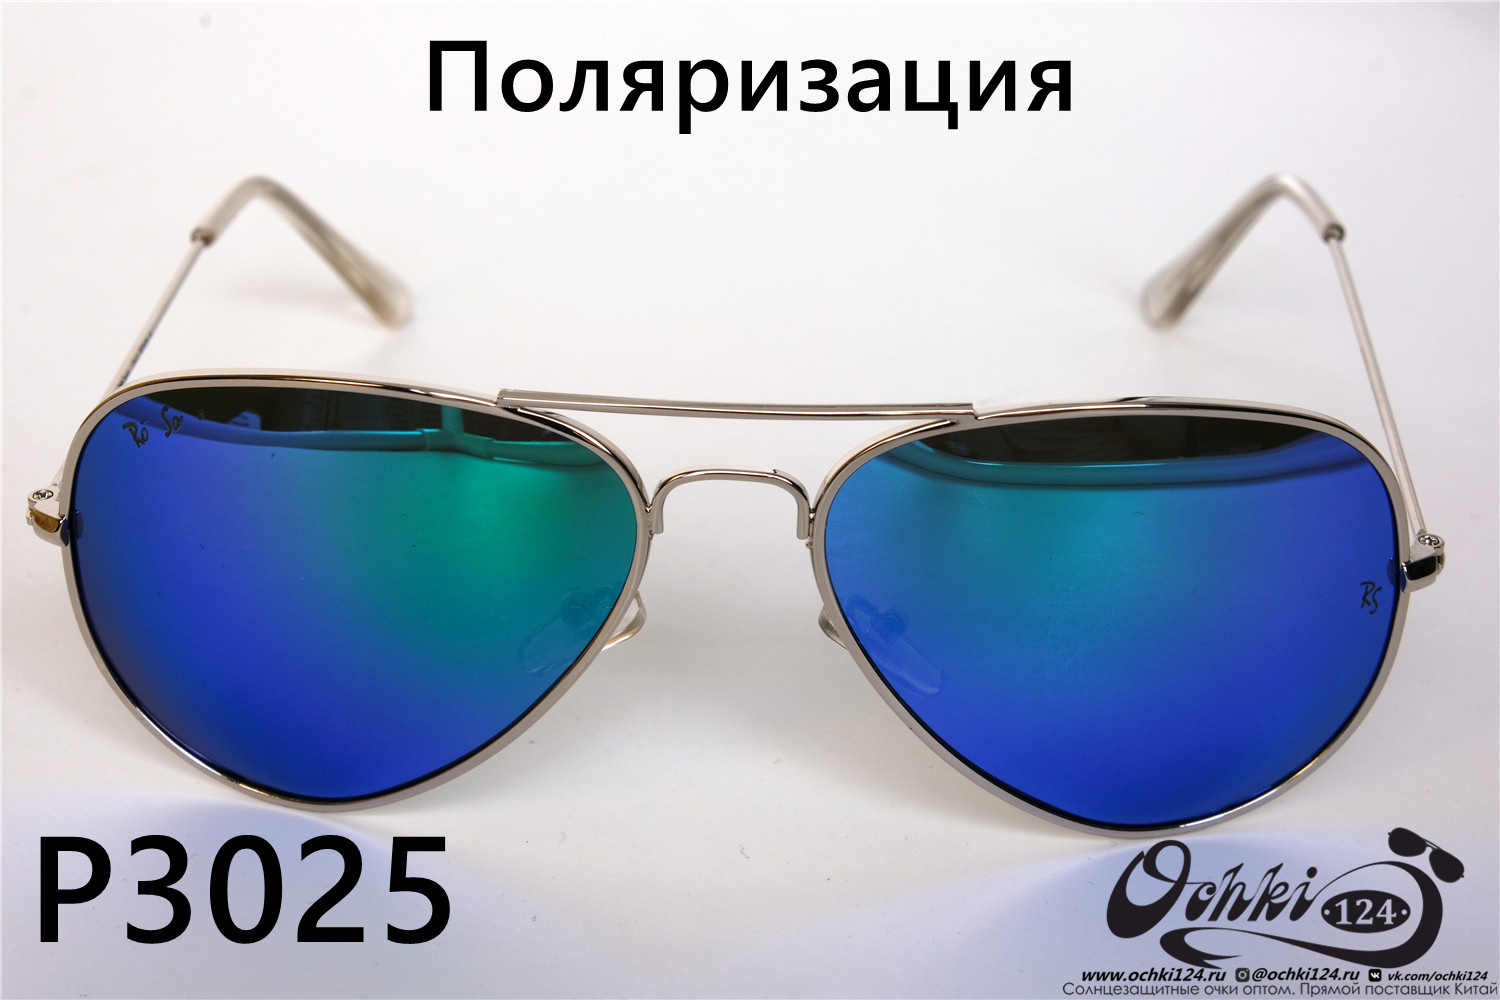  Солнцезащитные очки картинка 2022 Унисекс Поляризованные Авиаторы Rote Sonne P3025-4 